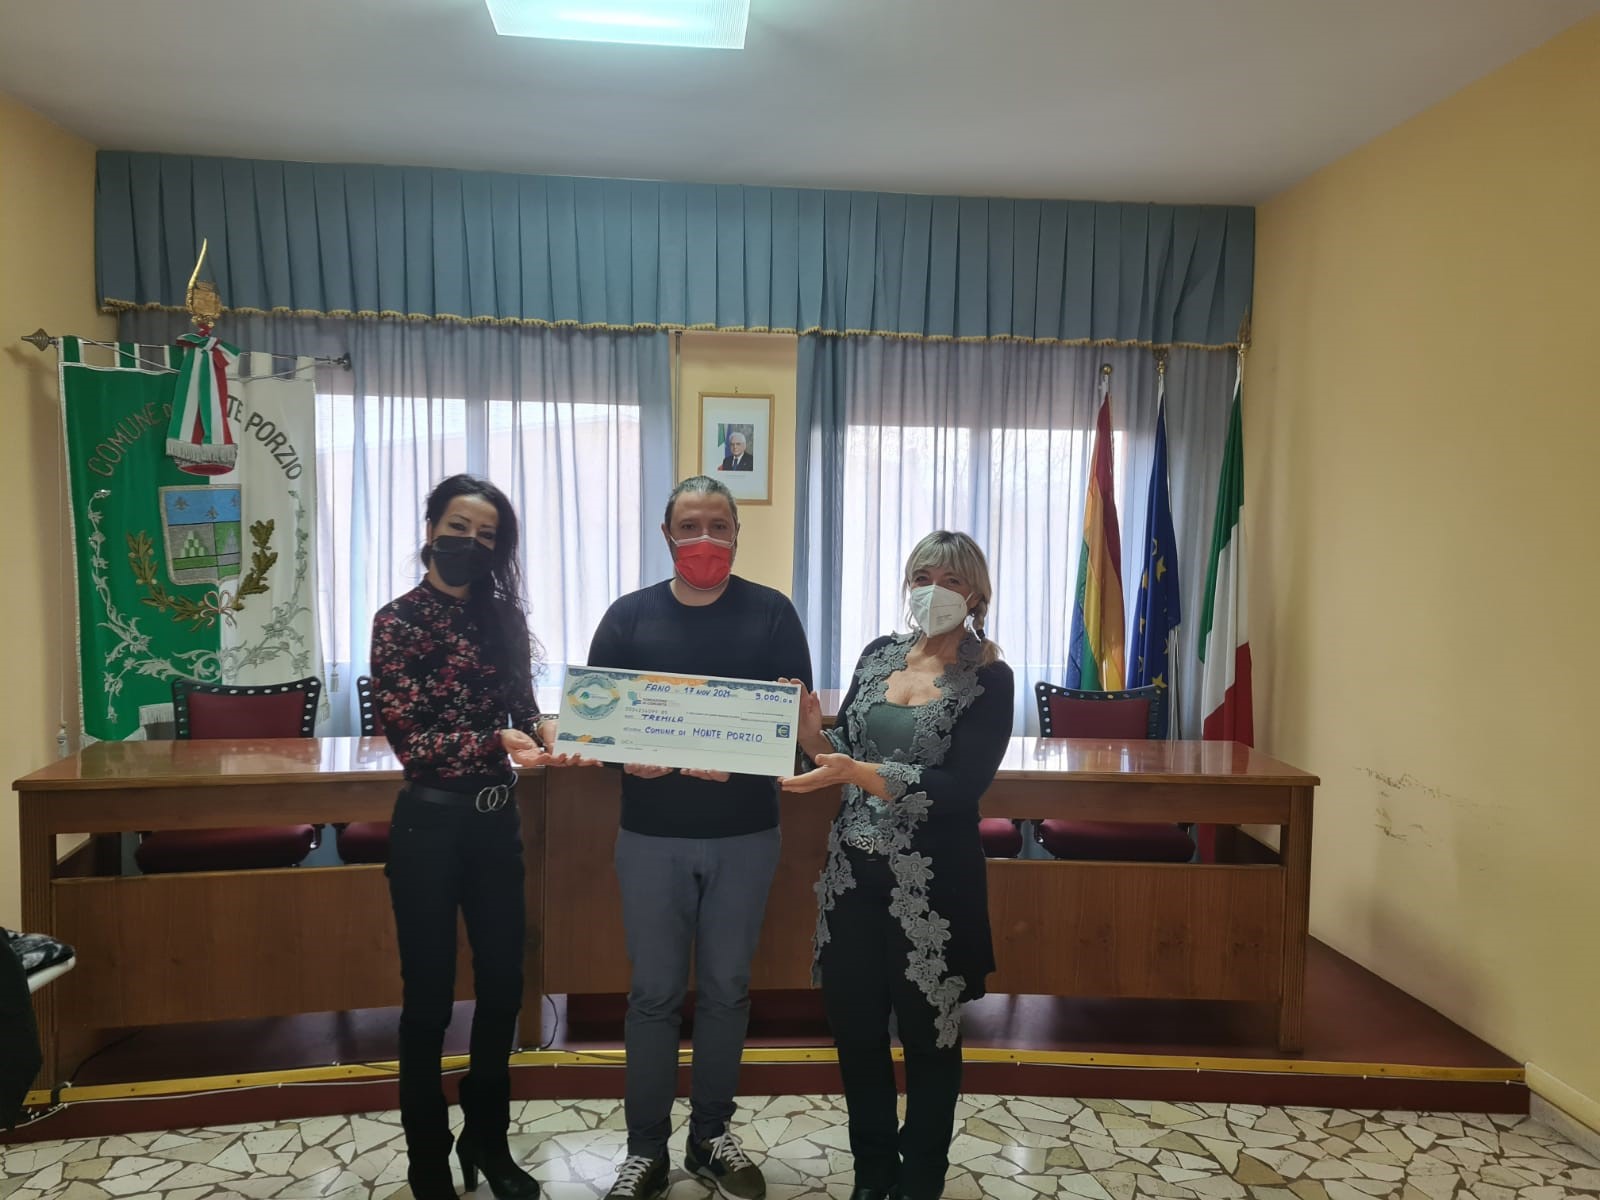 Featured image for “Erogato un contributo di  3000 euro al Comune di  Monte Porzio per le famiglie in difficoltà”